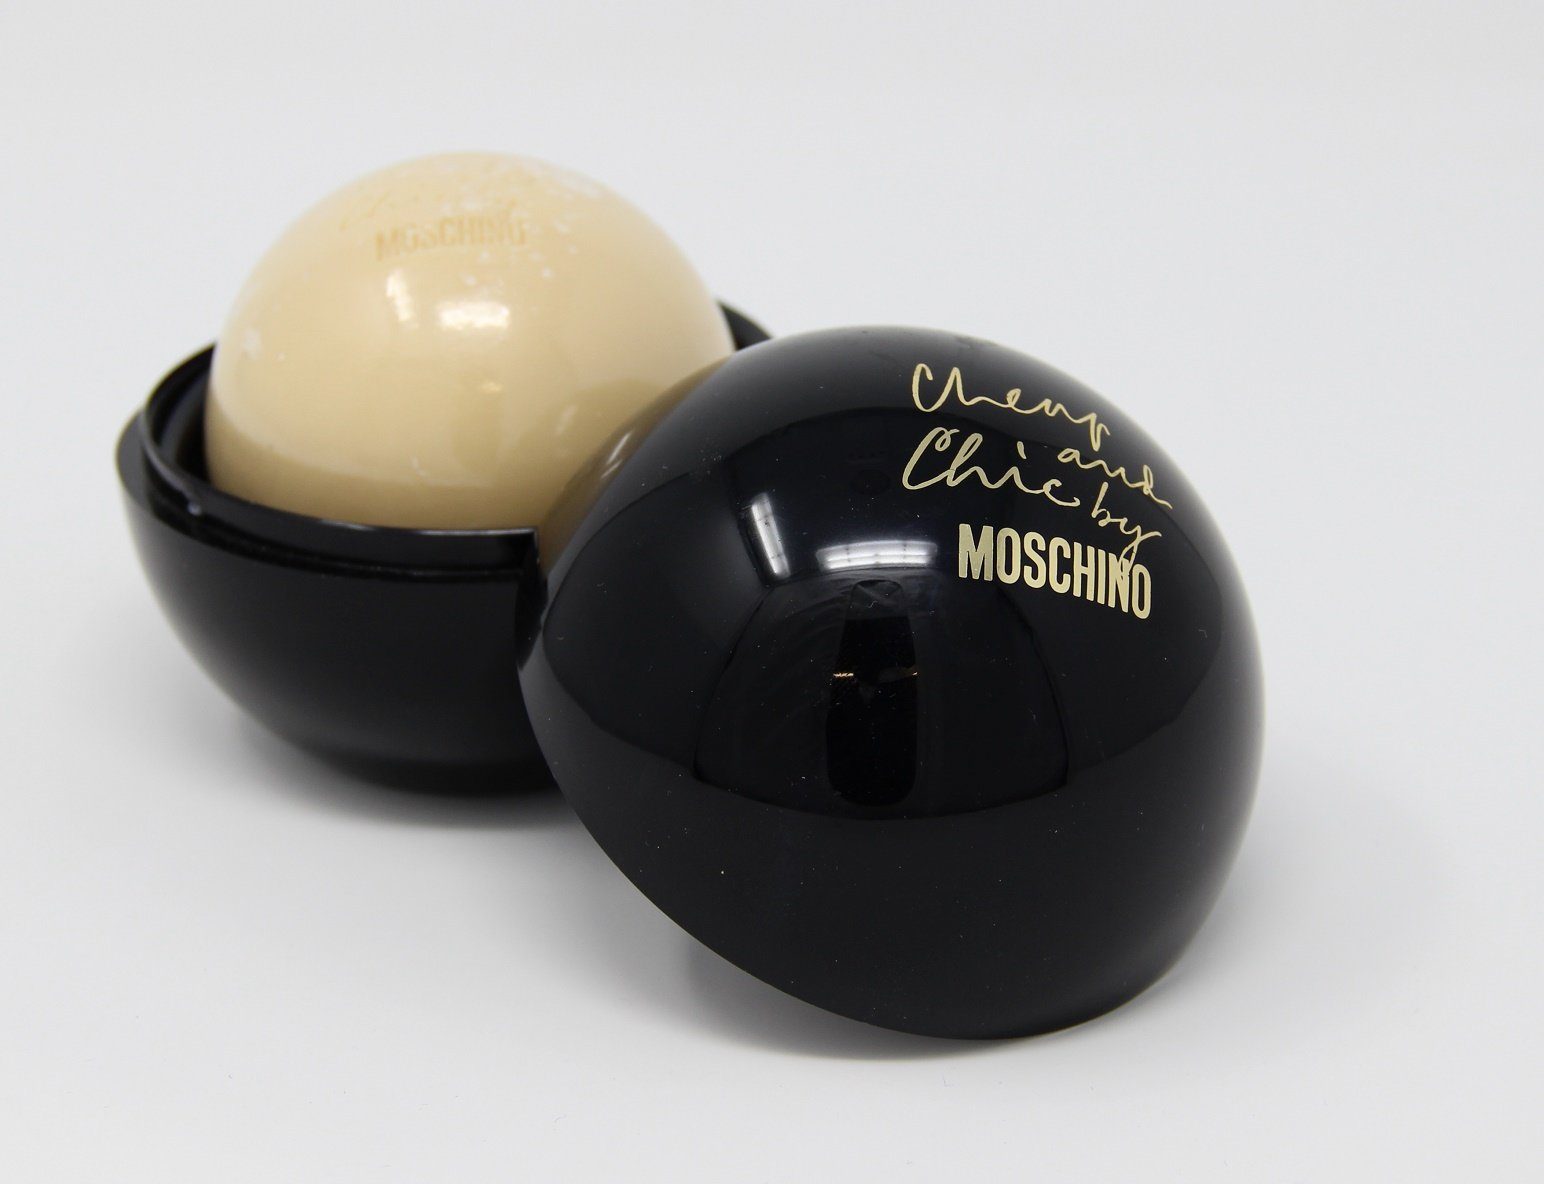 Seife Chic and Handseife Perfumed Cheap Moschino Moschino 100g